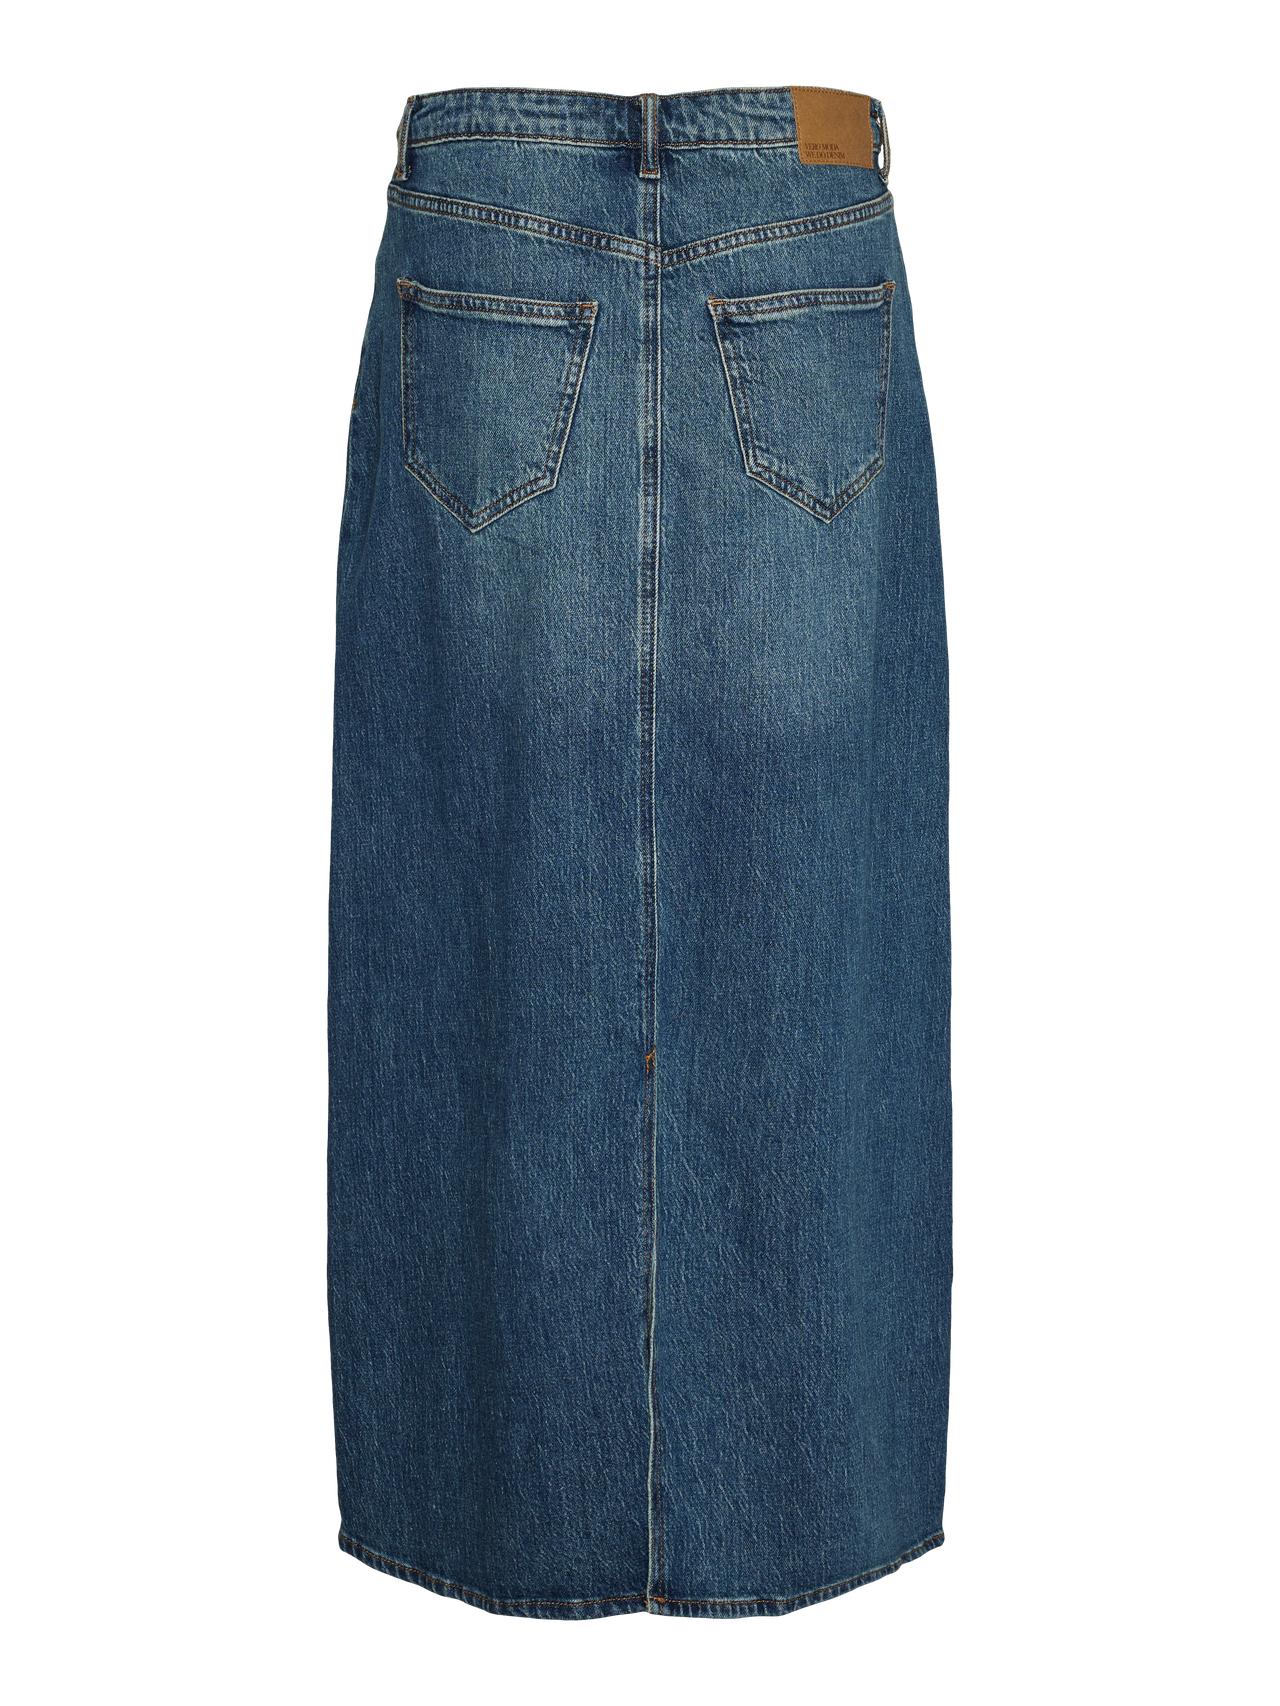 Vero Moda VMTESSA Long Skirt -Medium Blue Denim - 10311349